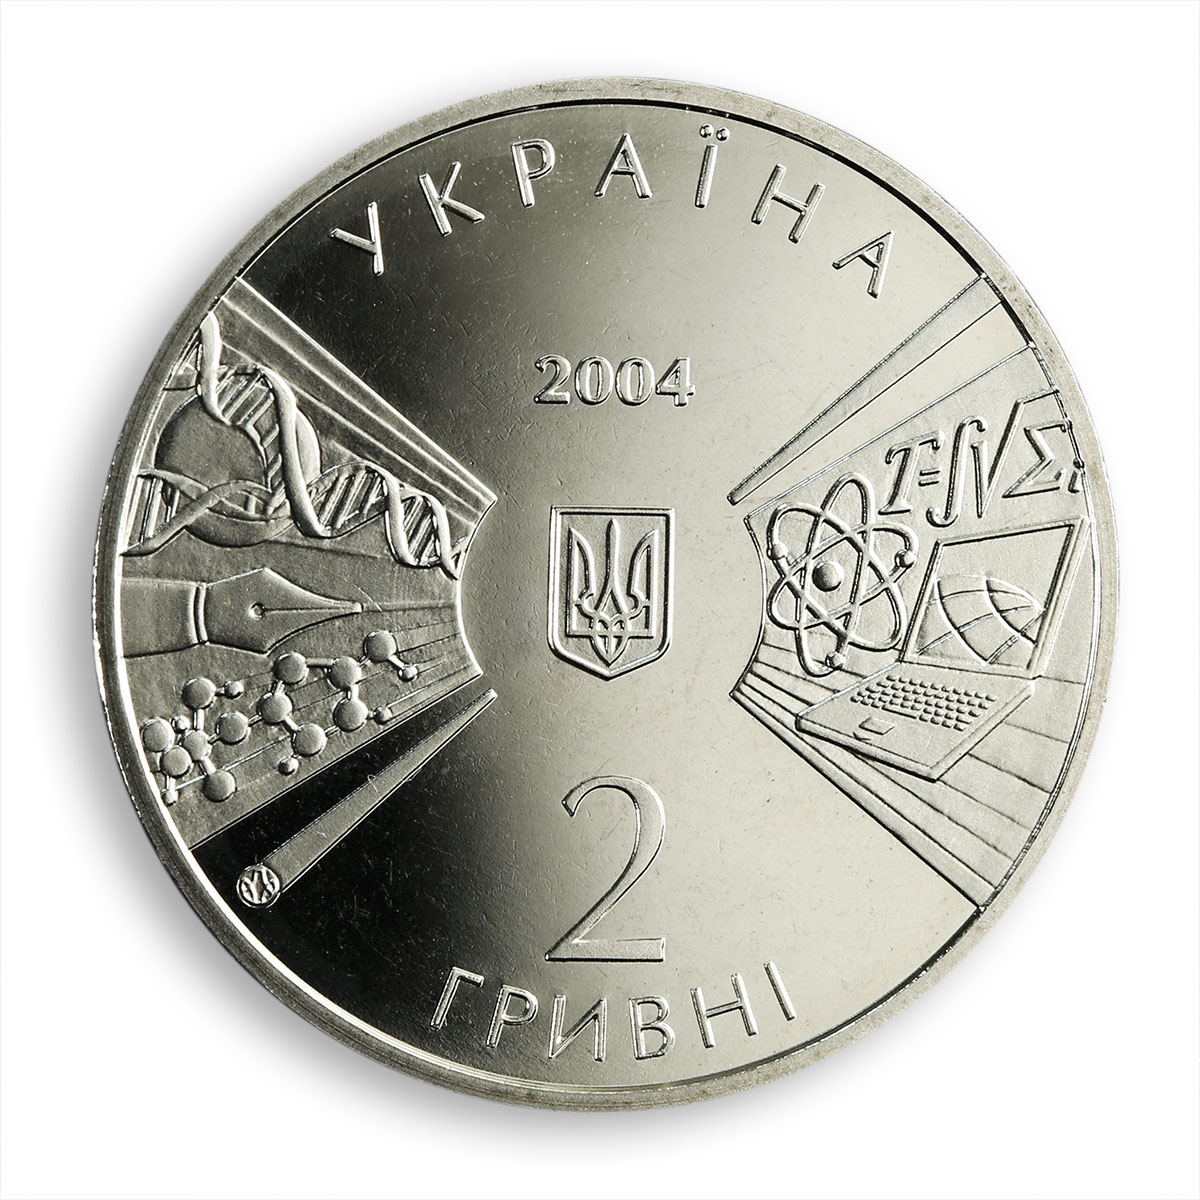 Ukraine 2 hryvnia 170 years Shevchenko Kyiv National University nickel coin 2004